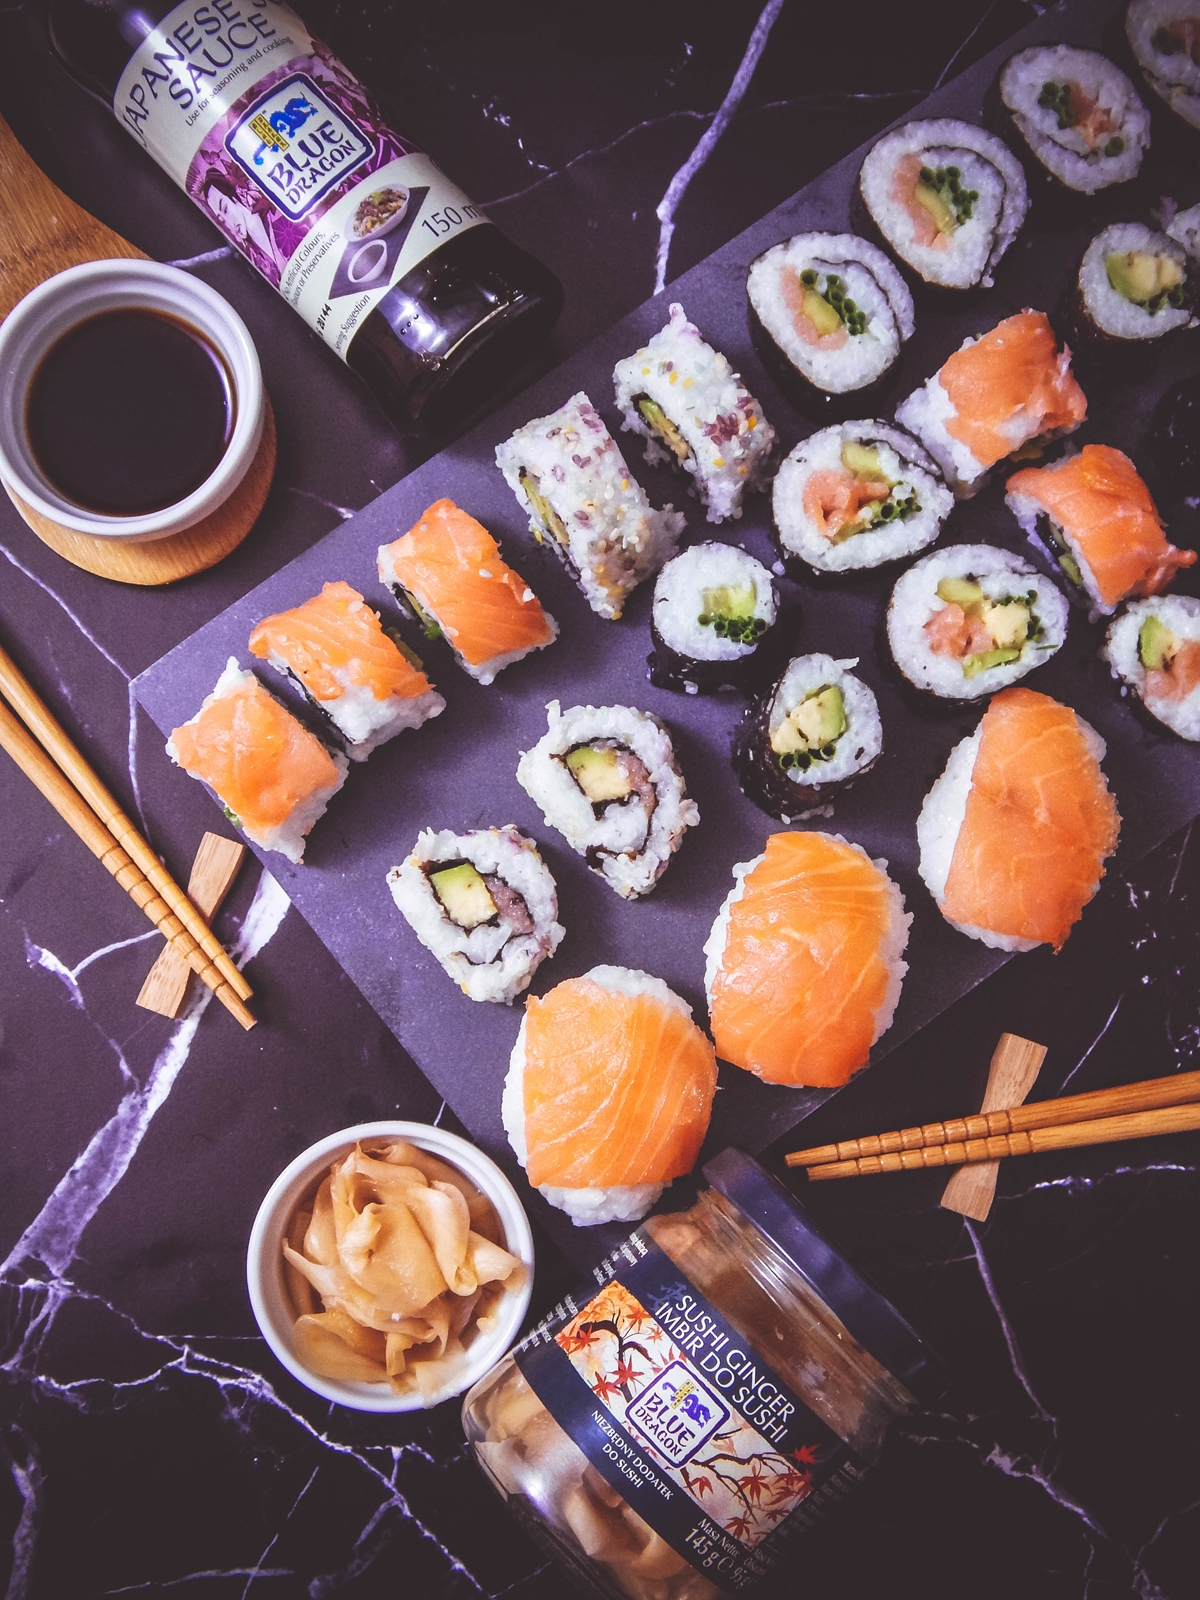 przepis na sushi jak zrobić sushi sushi bez surowej ryby z wędzonym łososiem dragon sushi przepis pomysły rodzaje sushi blog kulinarny melodylaniella łódź blogerka łódzka